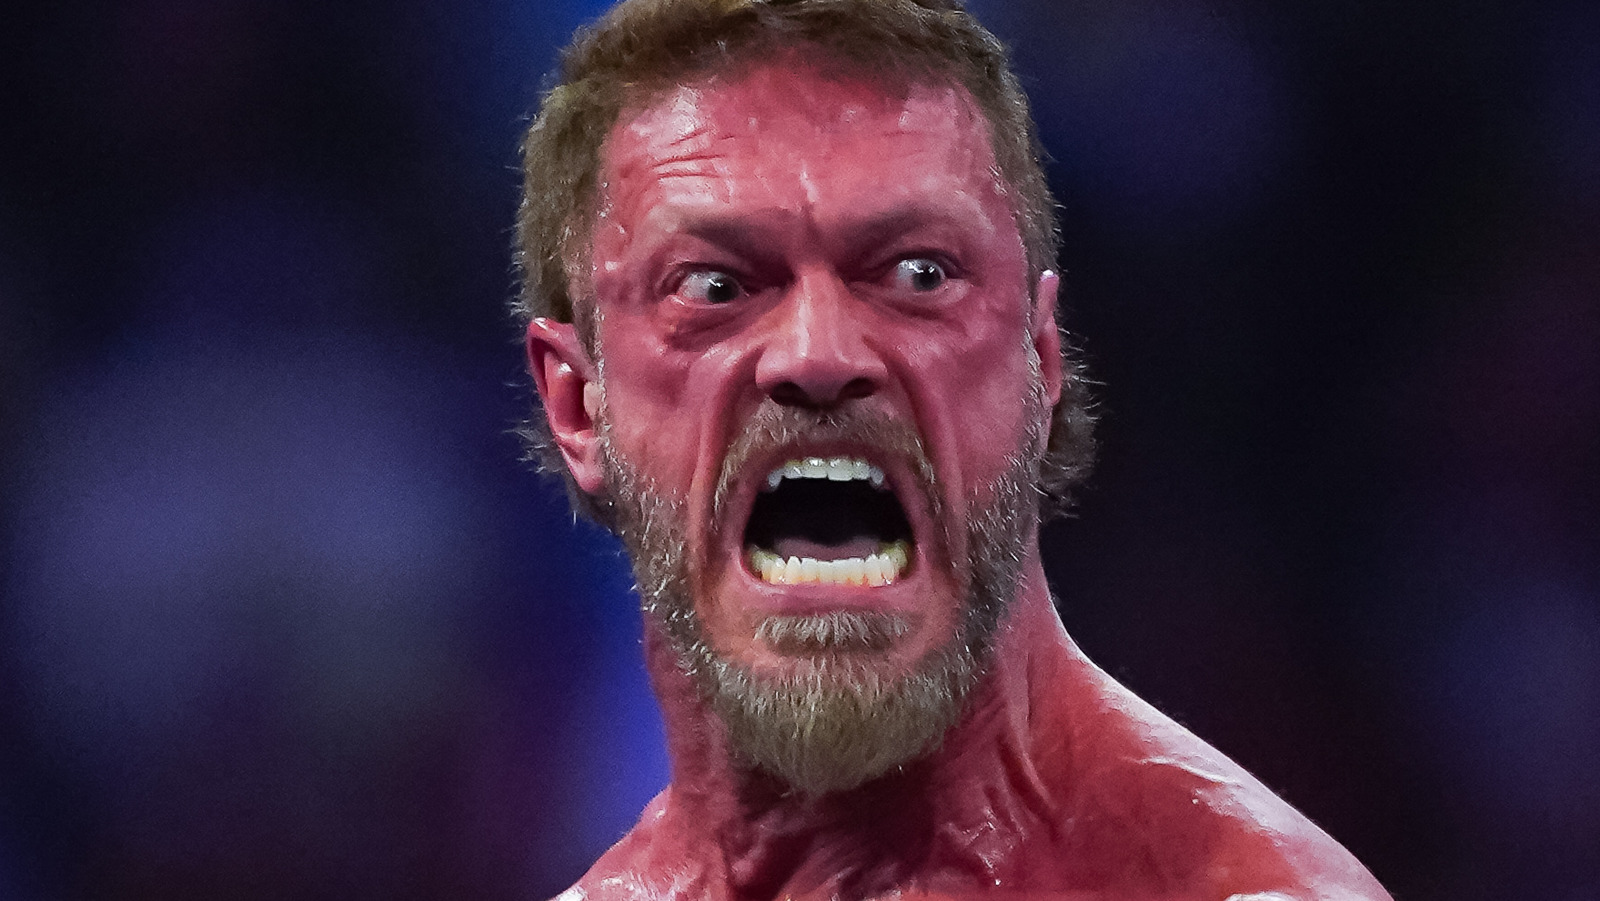 Edge no extraña estar de gira con WWE, dice que su trabajo favorito es ser papá